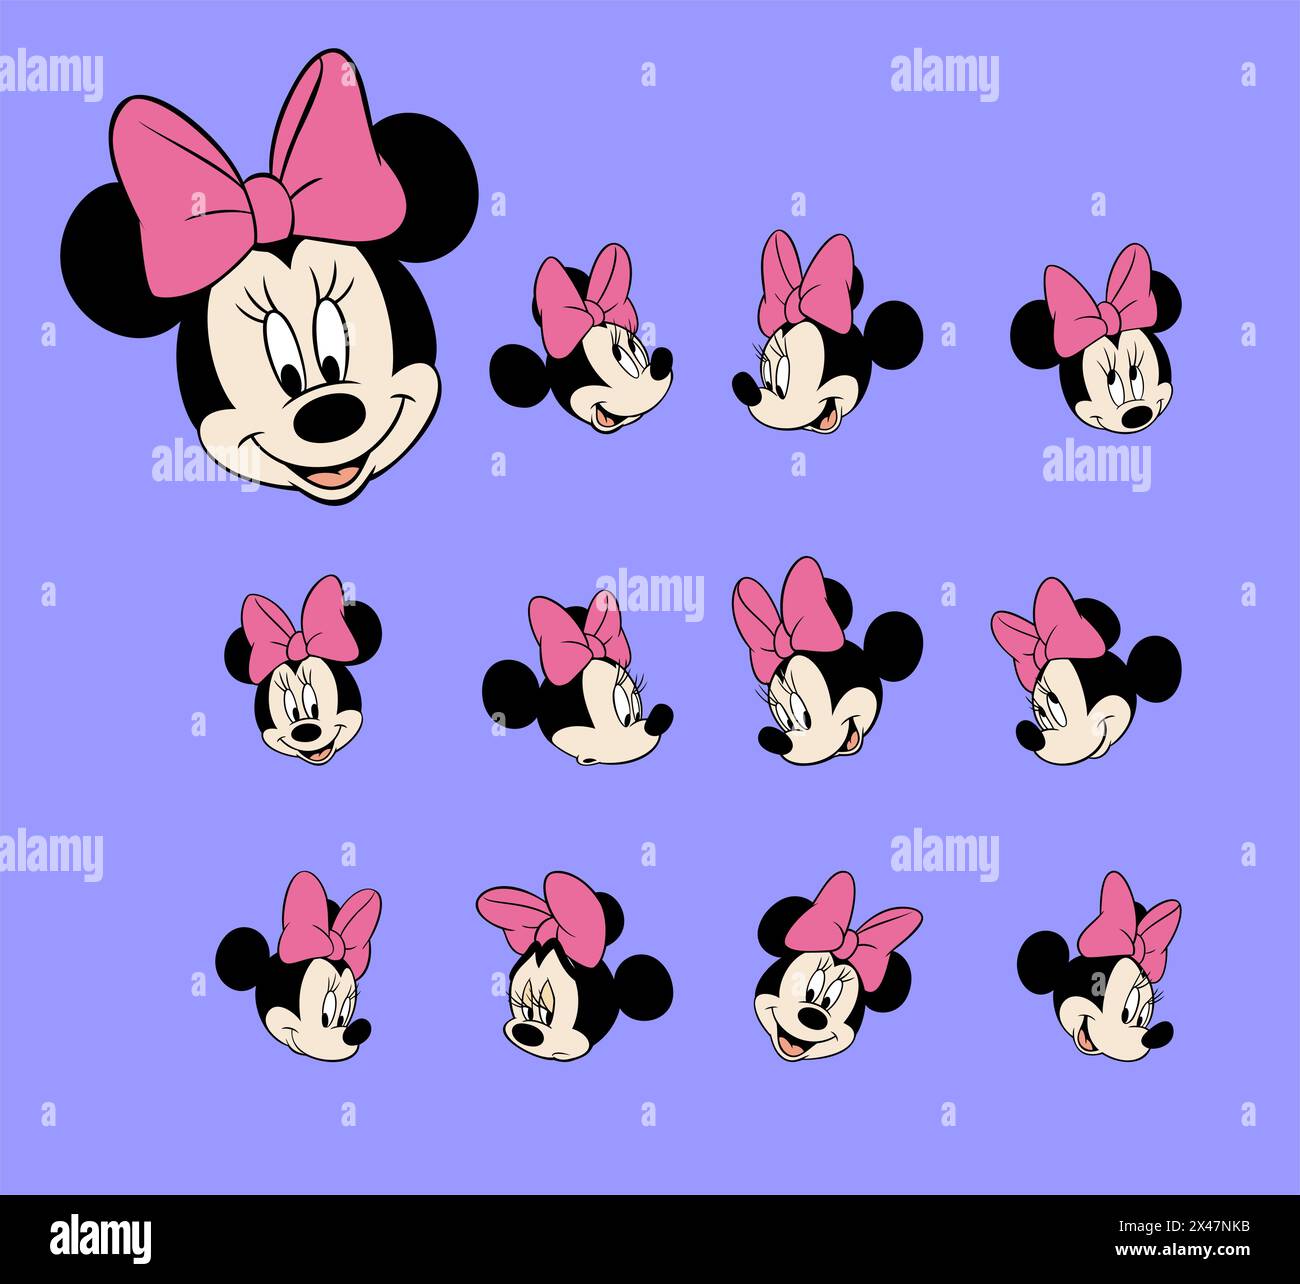 Disney Charakter minnie Maus Gesicht Vektor Illustration Kunst Stock Vektor